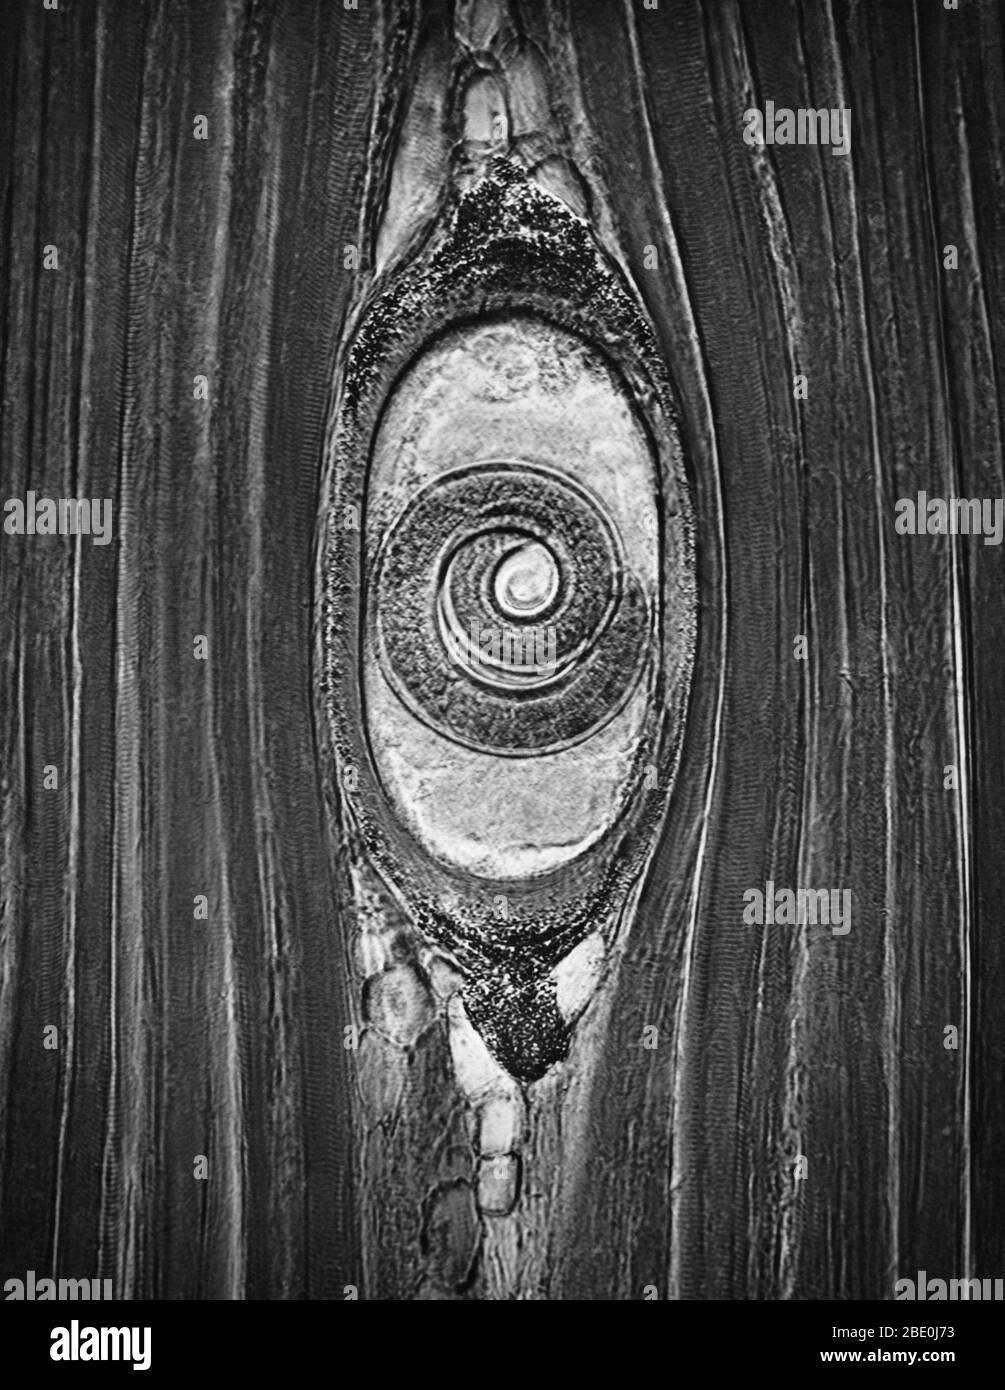 Leichte Mikrographie des Muskels mit eingezäuntem Trichinella spiralis, einem Fadenwurm-Parasiten, der für die Trichinose-Krankheit verantwortlich ist. Vergrößerung: 300FACH. Stockfoto